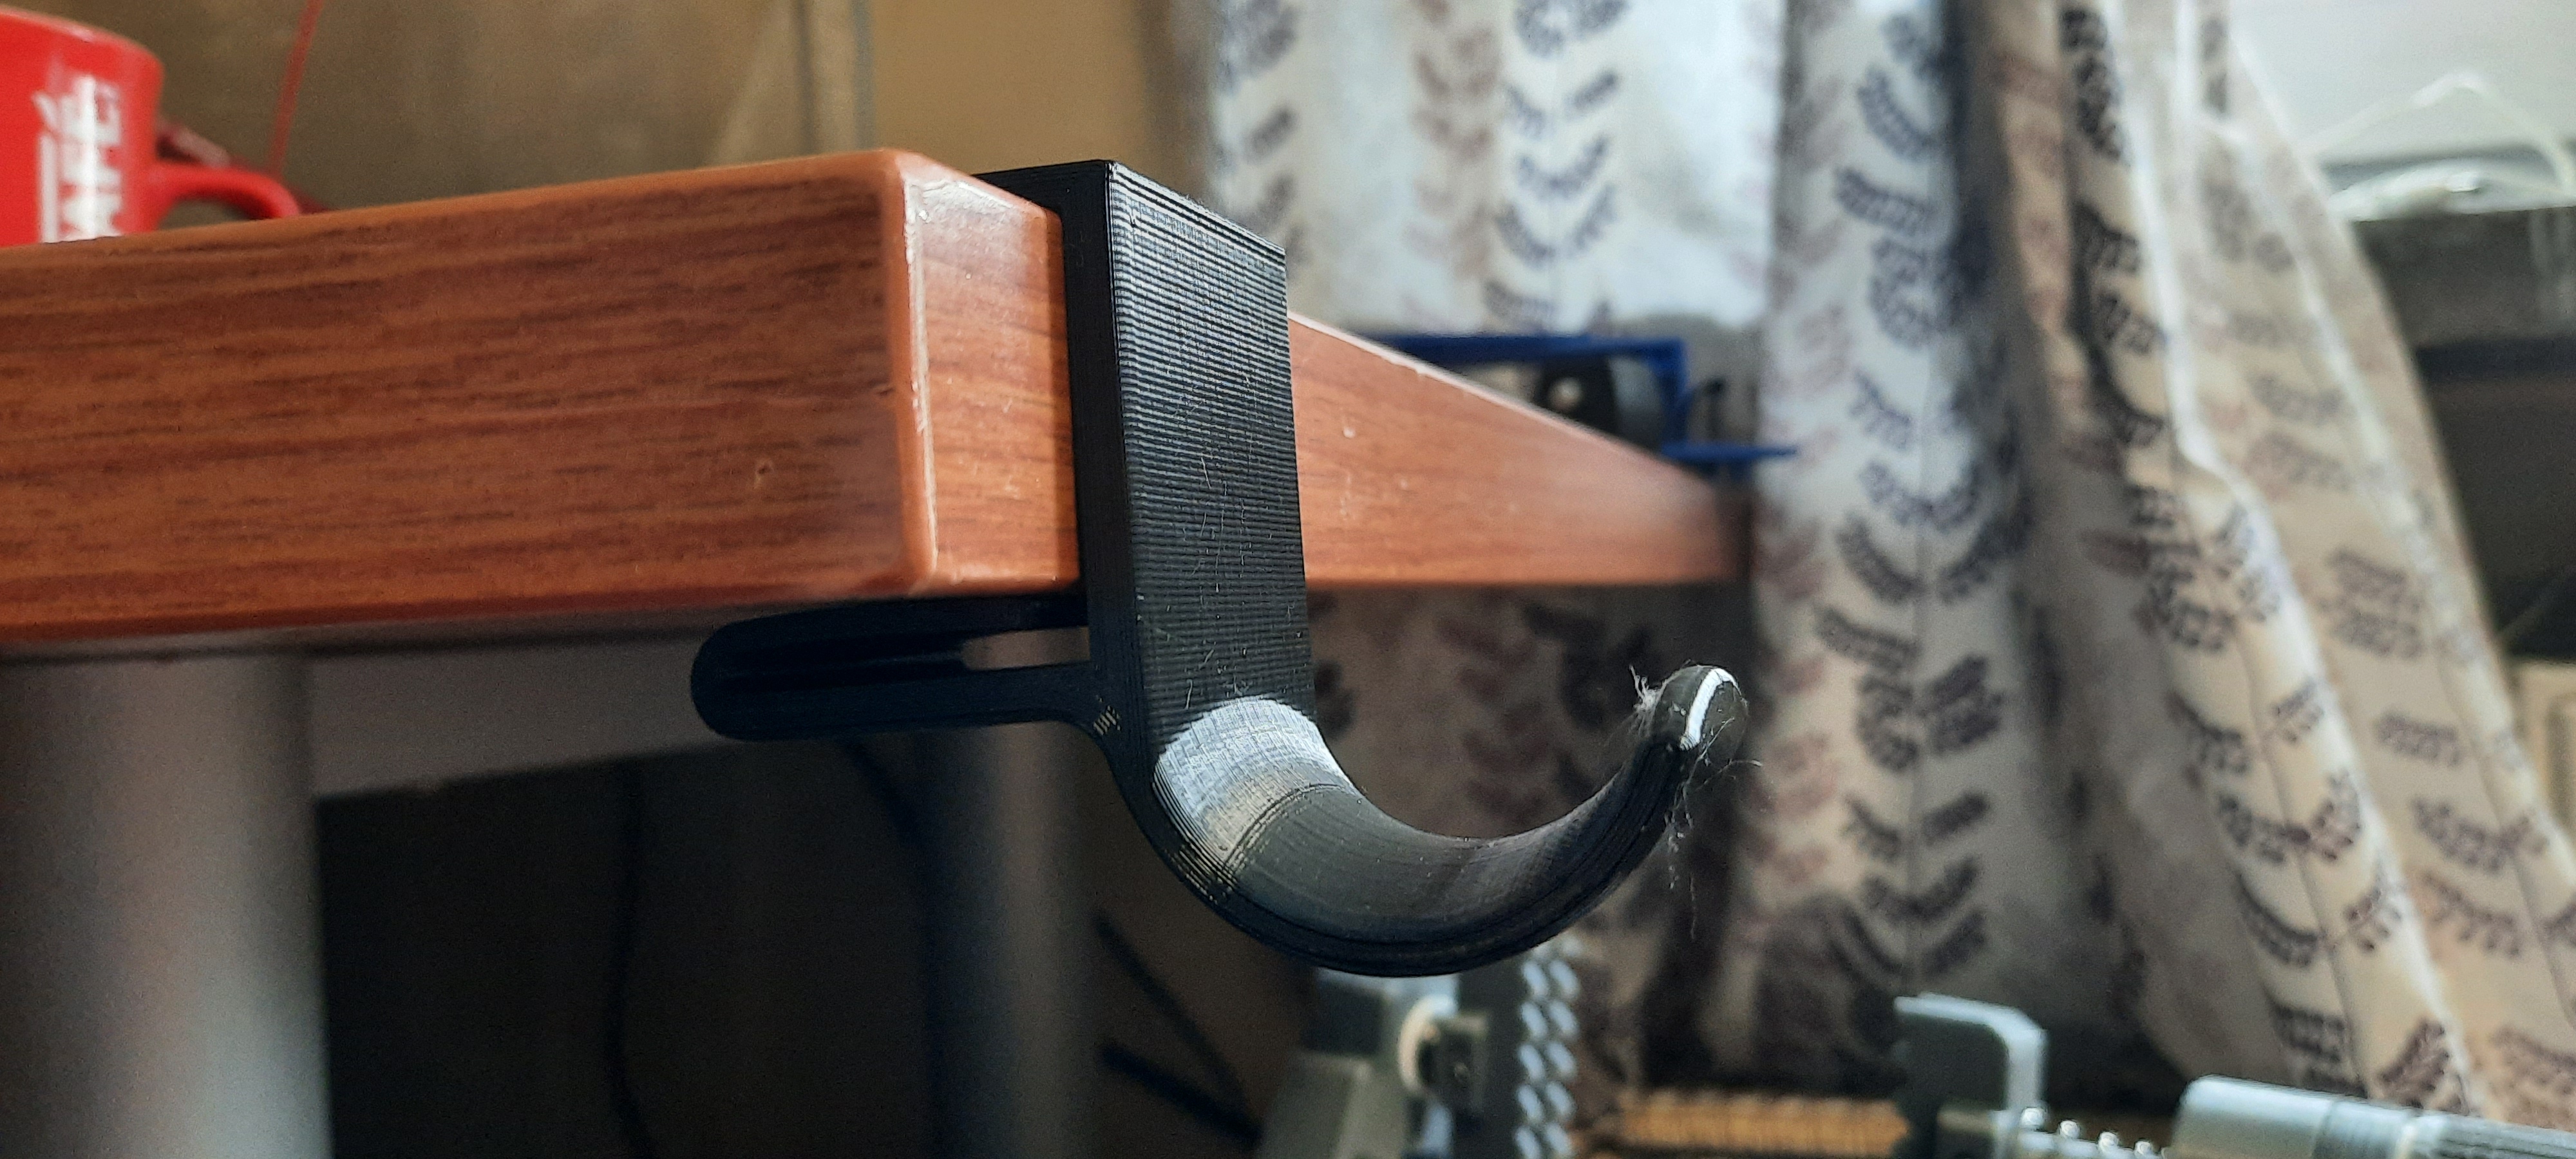 Valve HMD desk hanger